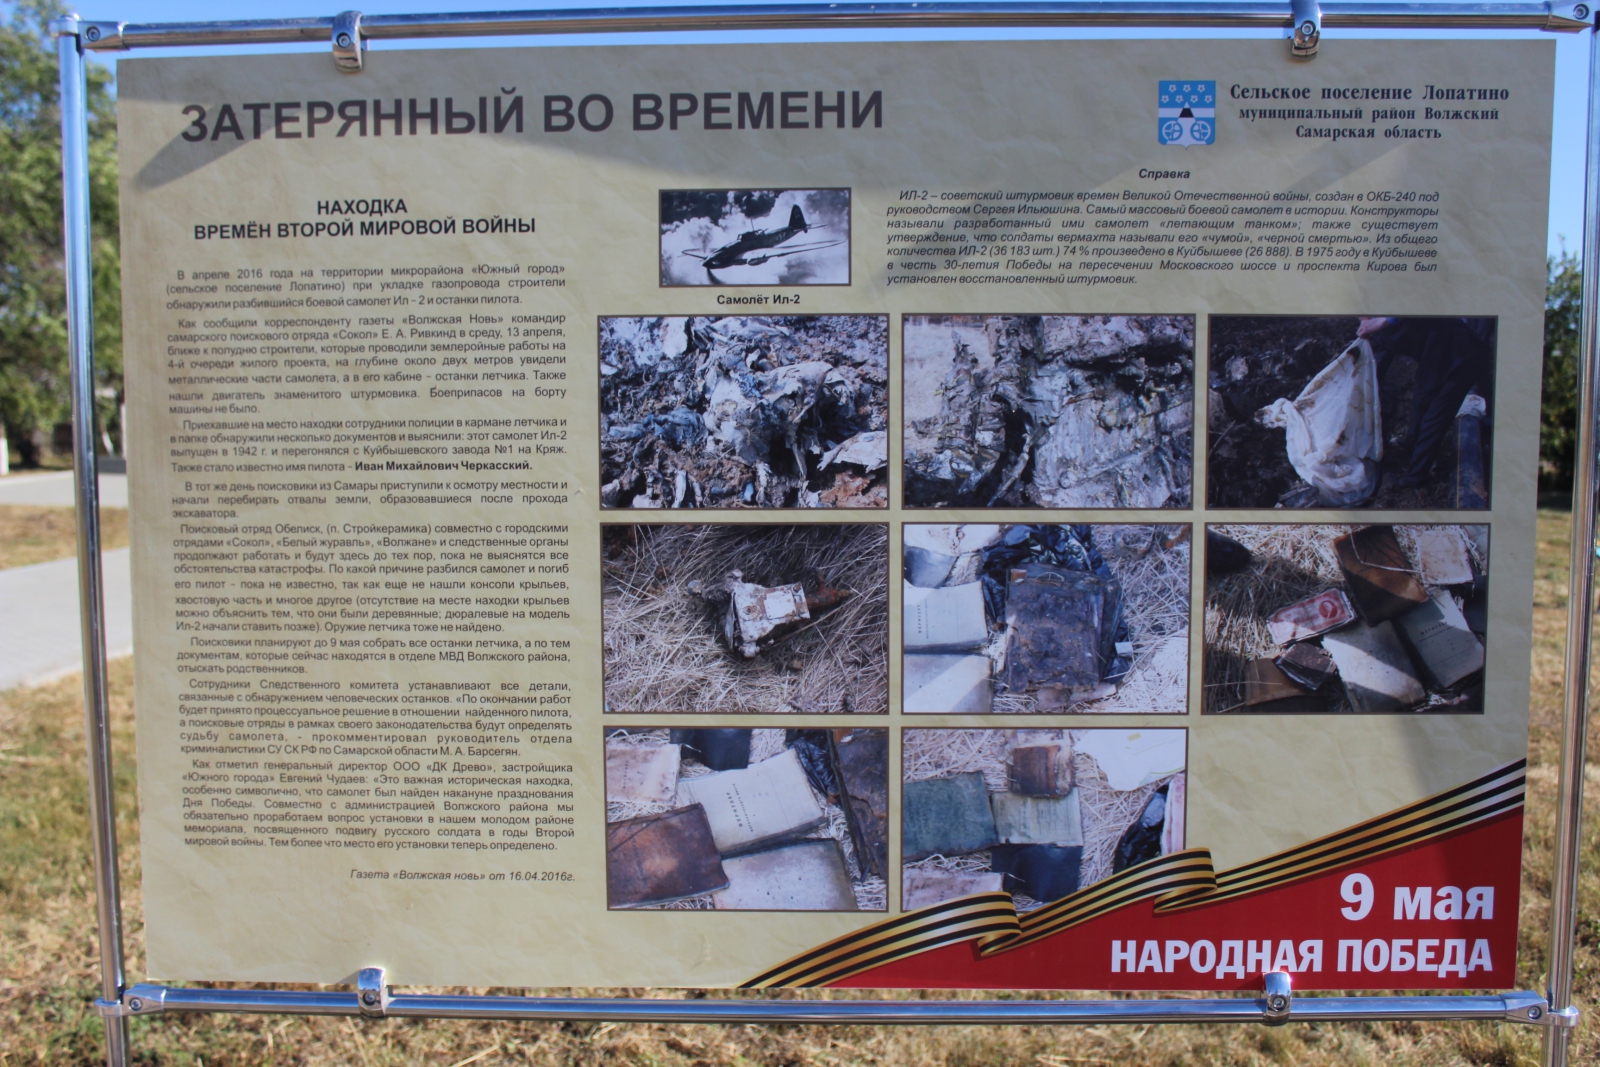 Памятники погибшим пилотам. В Волжском районе Самарской области нашли захоронение. Погода придорожный самарской волжского